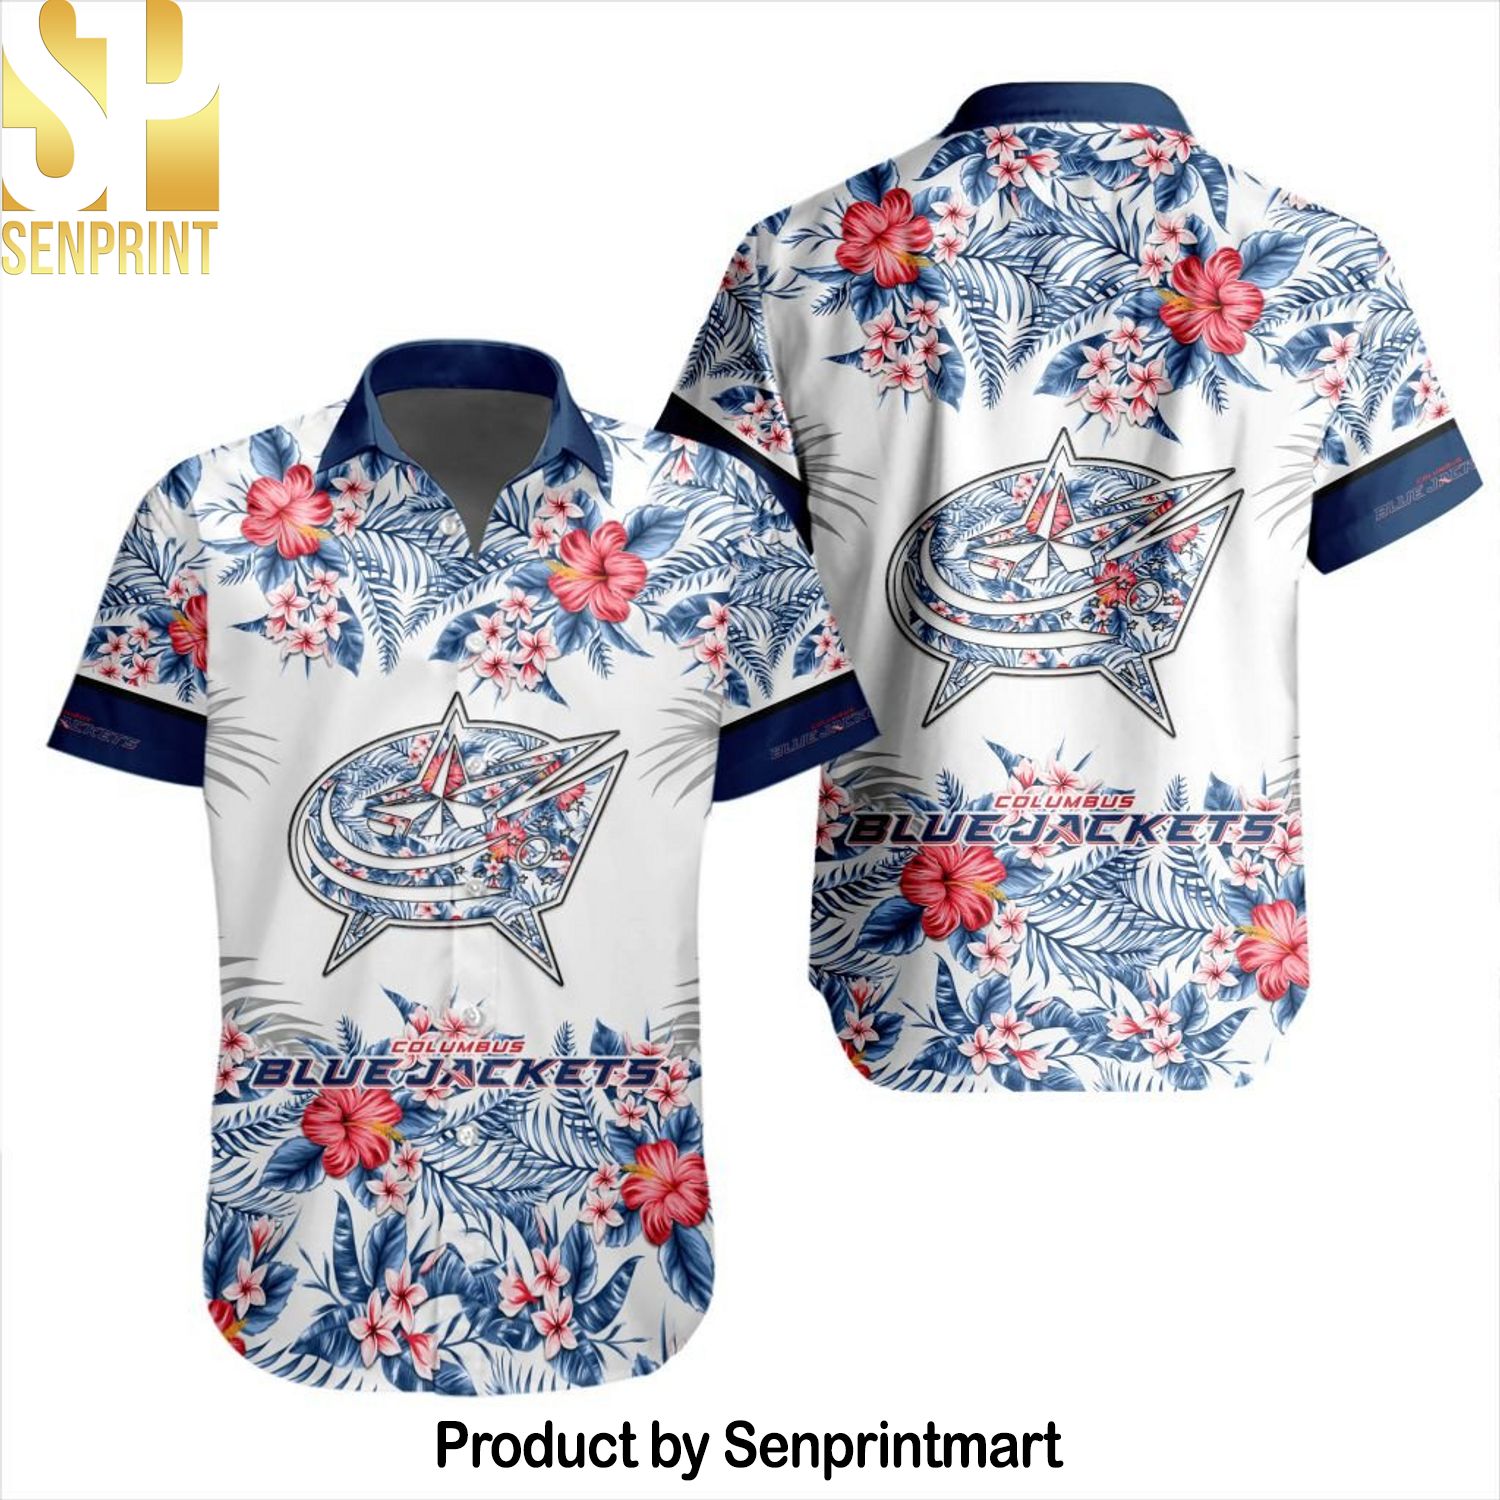 NHL Columbus Blue Jackets All Over Printed 3D Hawaiian Shirt and Shorts